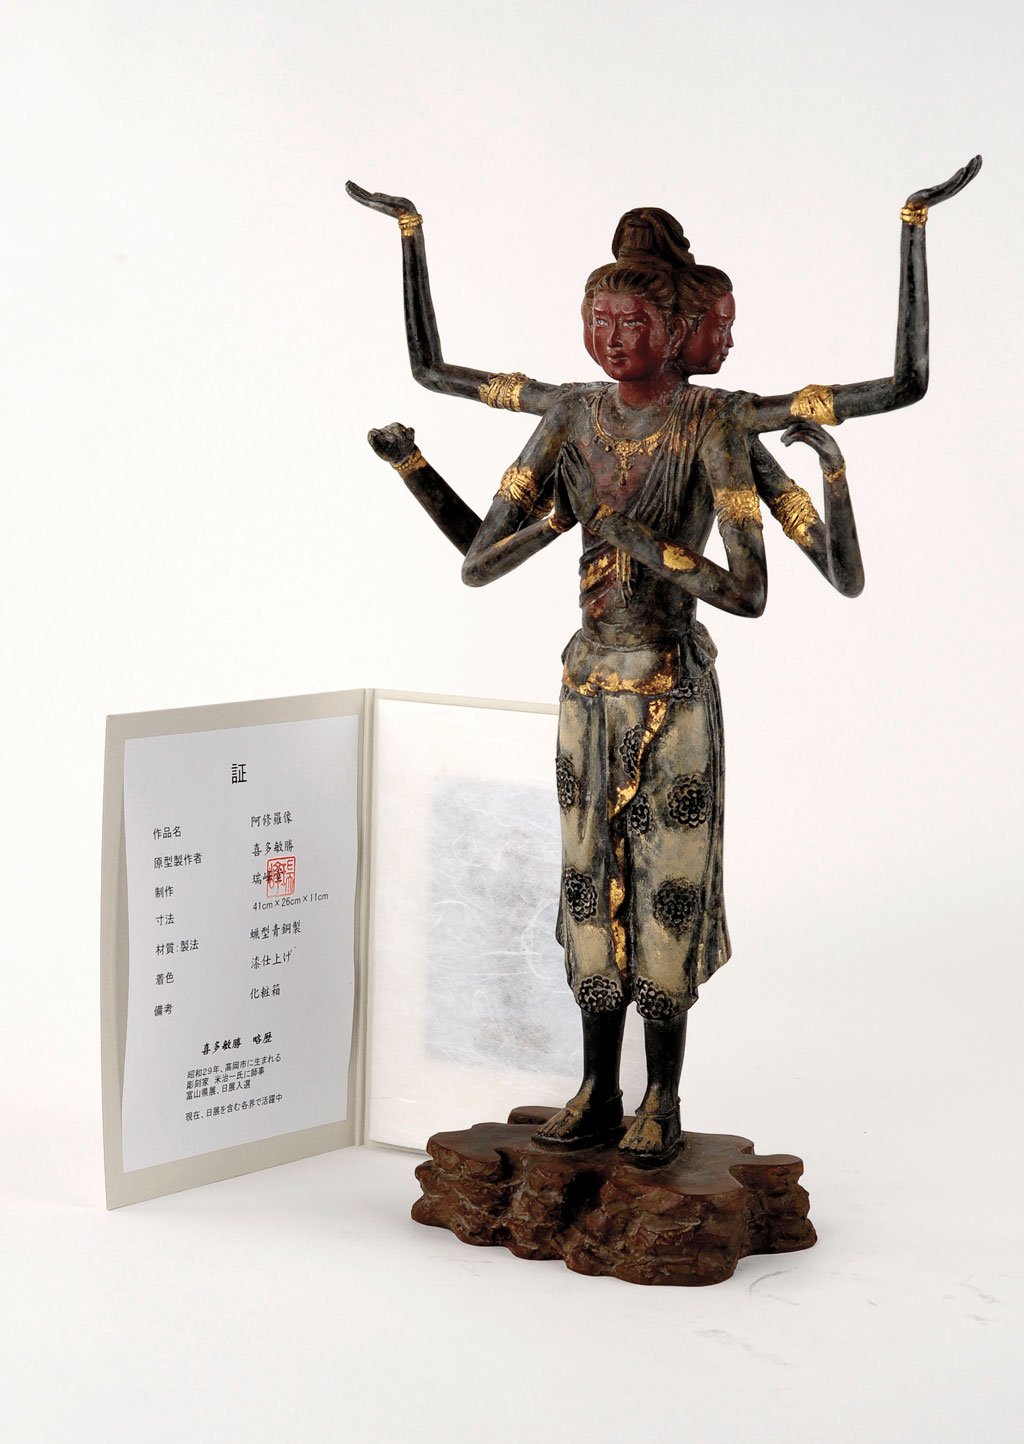 【仏像】国宝 阿修羅像 喜多敏勝作 | 日本の手技,高岡銅器の仏像 | | 仏像ワールド